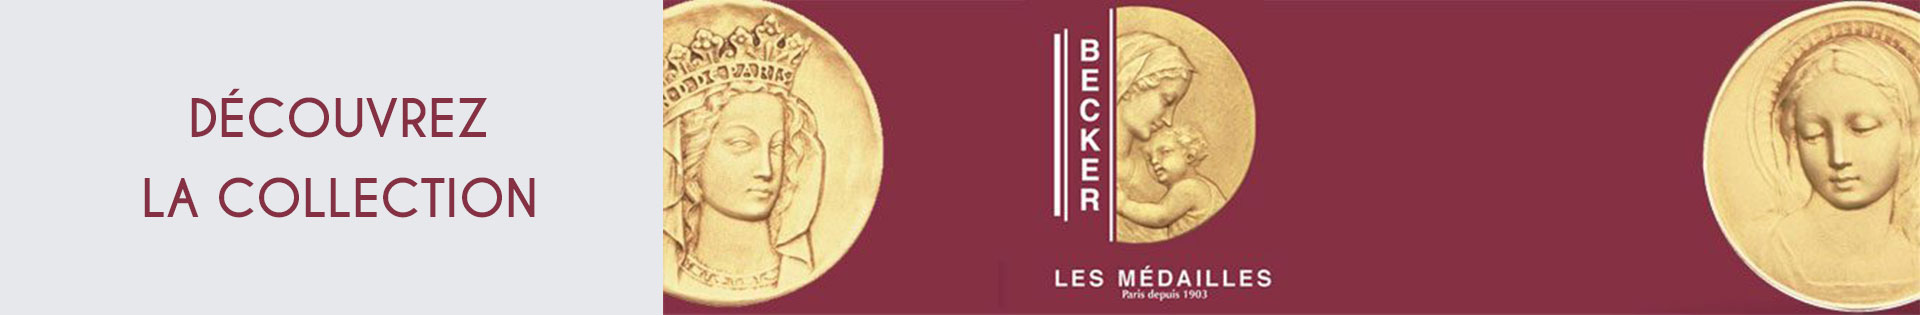 Médaille et symbole - Becker - St-Christophe